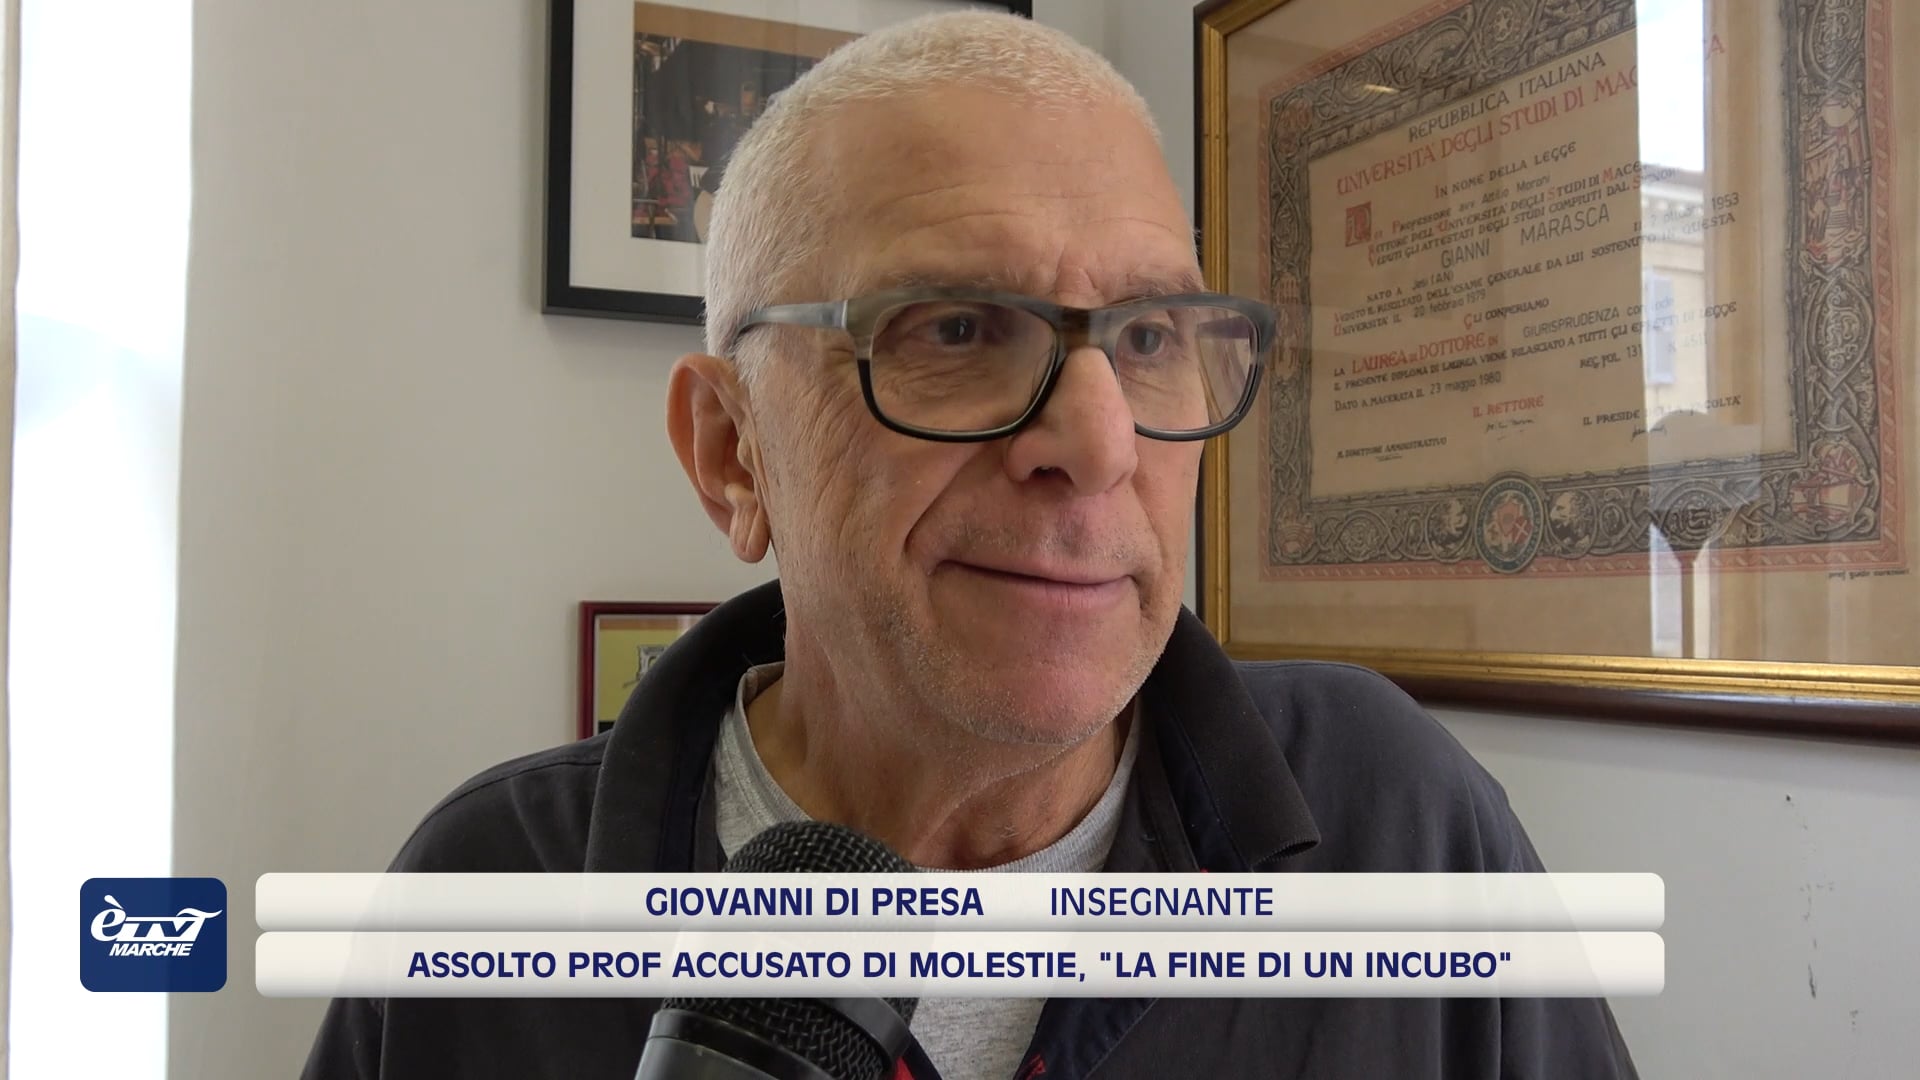 Assolto prof. accusato di molestie, Giovanni Di Presa: 